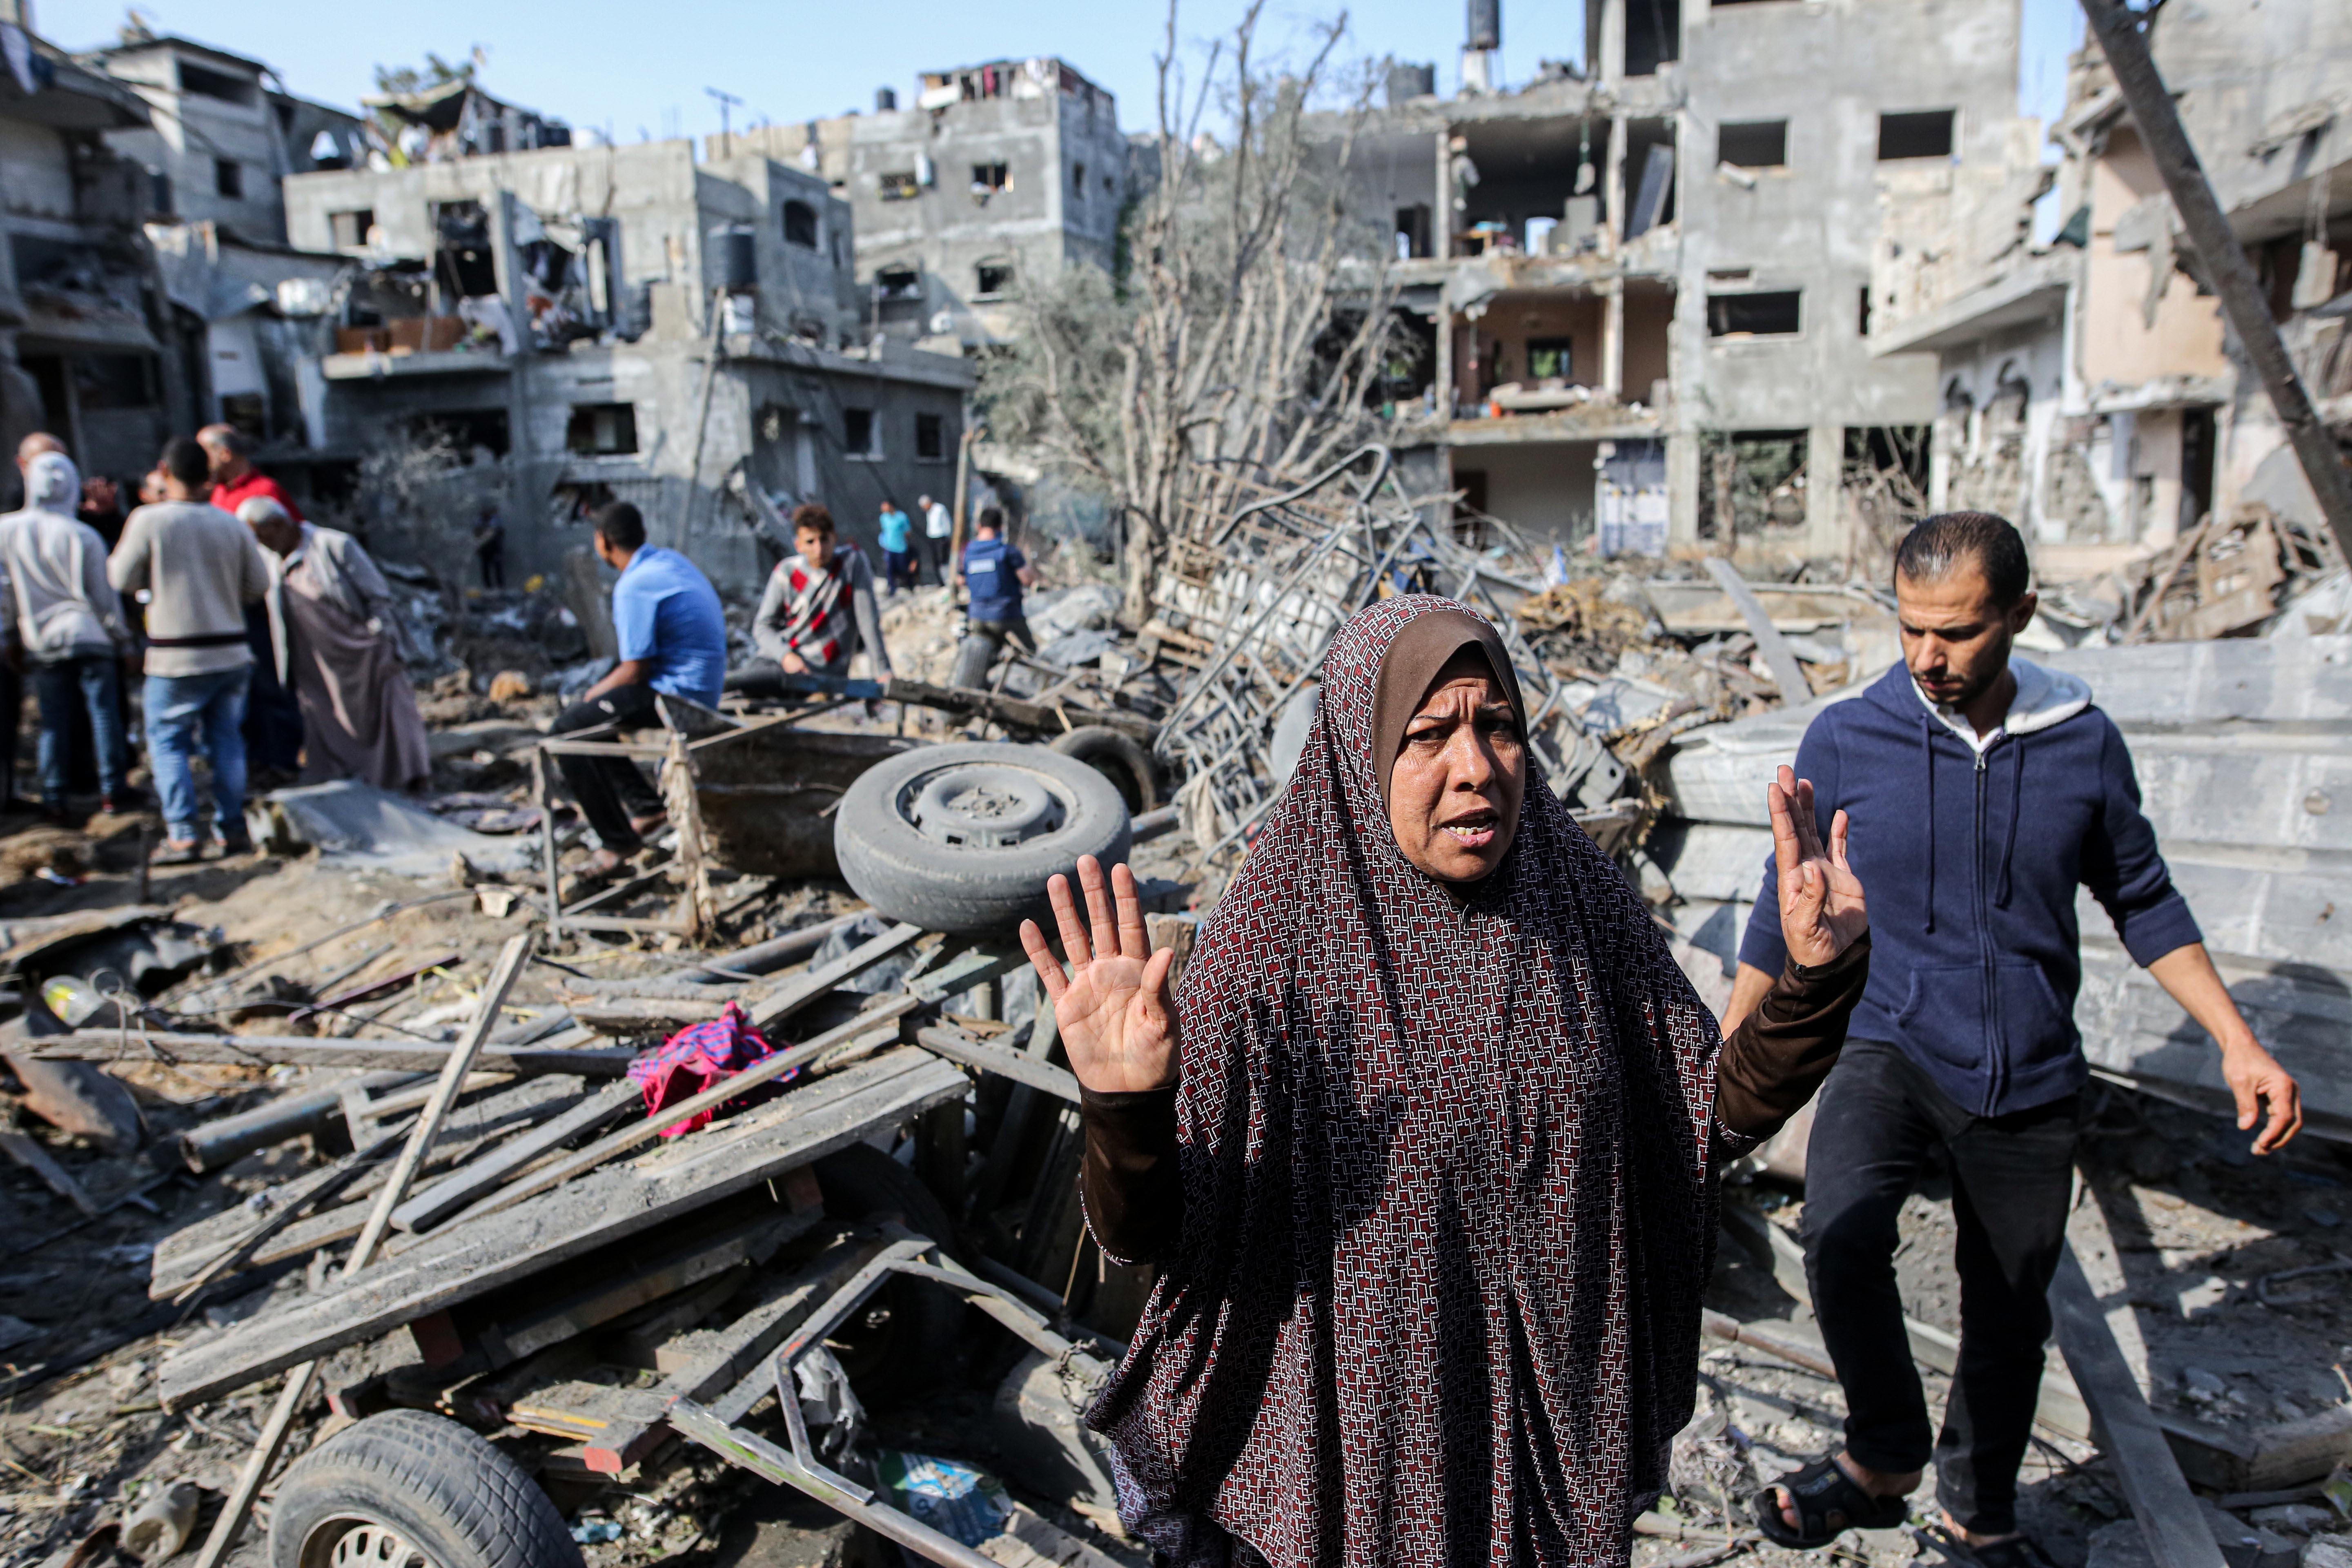 Filistin halkının, bombalanan evlerinin enkazı üzerinde durduğu anlar görüntülere yansıdı